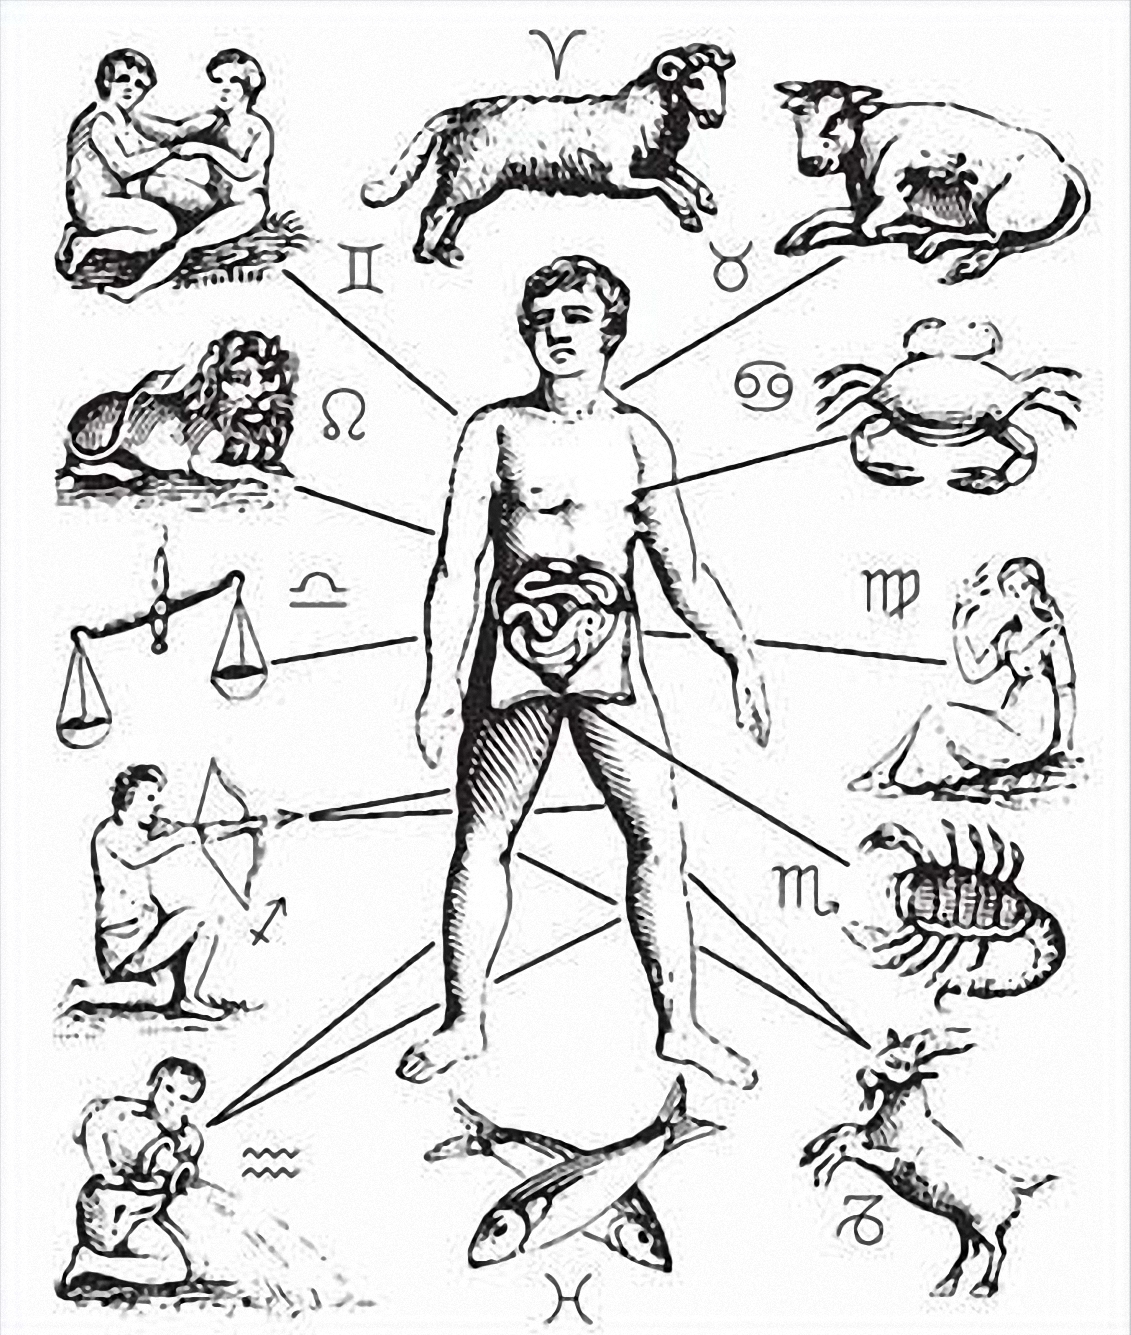 Vào cuối thời kỳ Trung Cổ, các nhà chiêm tinh y học tin rằng cung hoàng đạo chi phối bệnh tật của con người. Ảnh: Wikimedia.